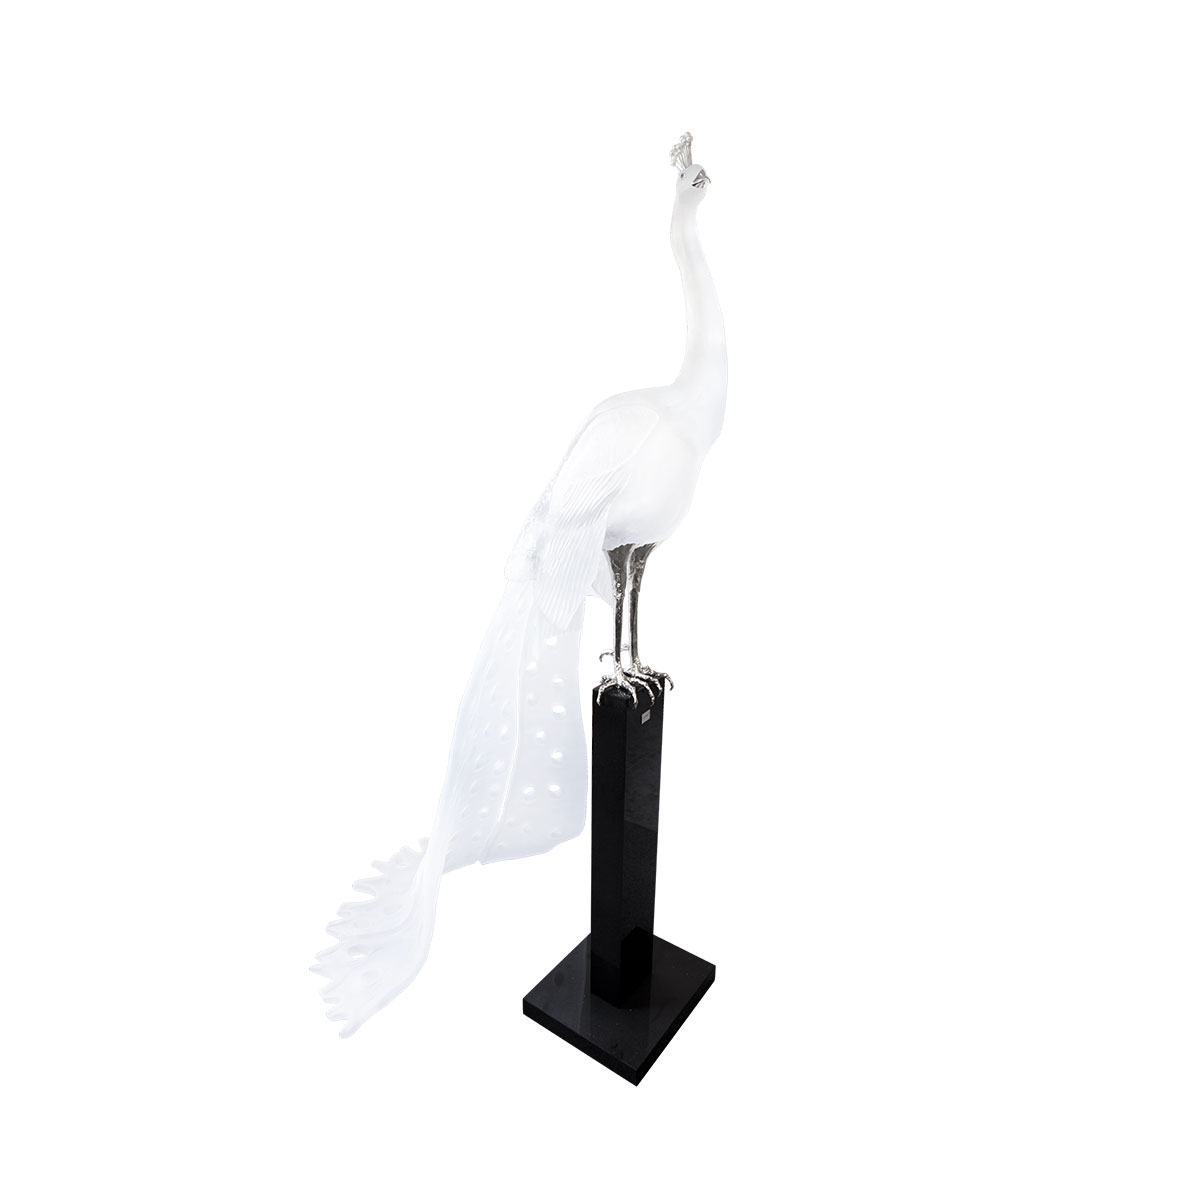 Daum White Peacock by Madeleine van der Knoop, Limited Edition Sculpture